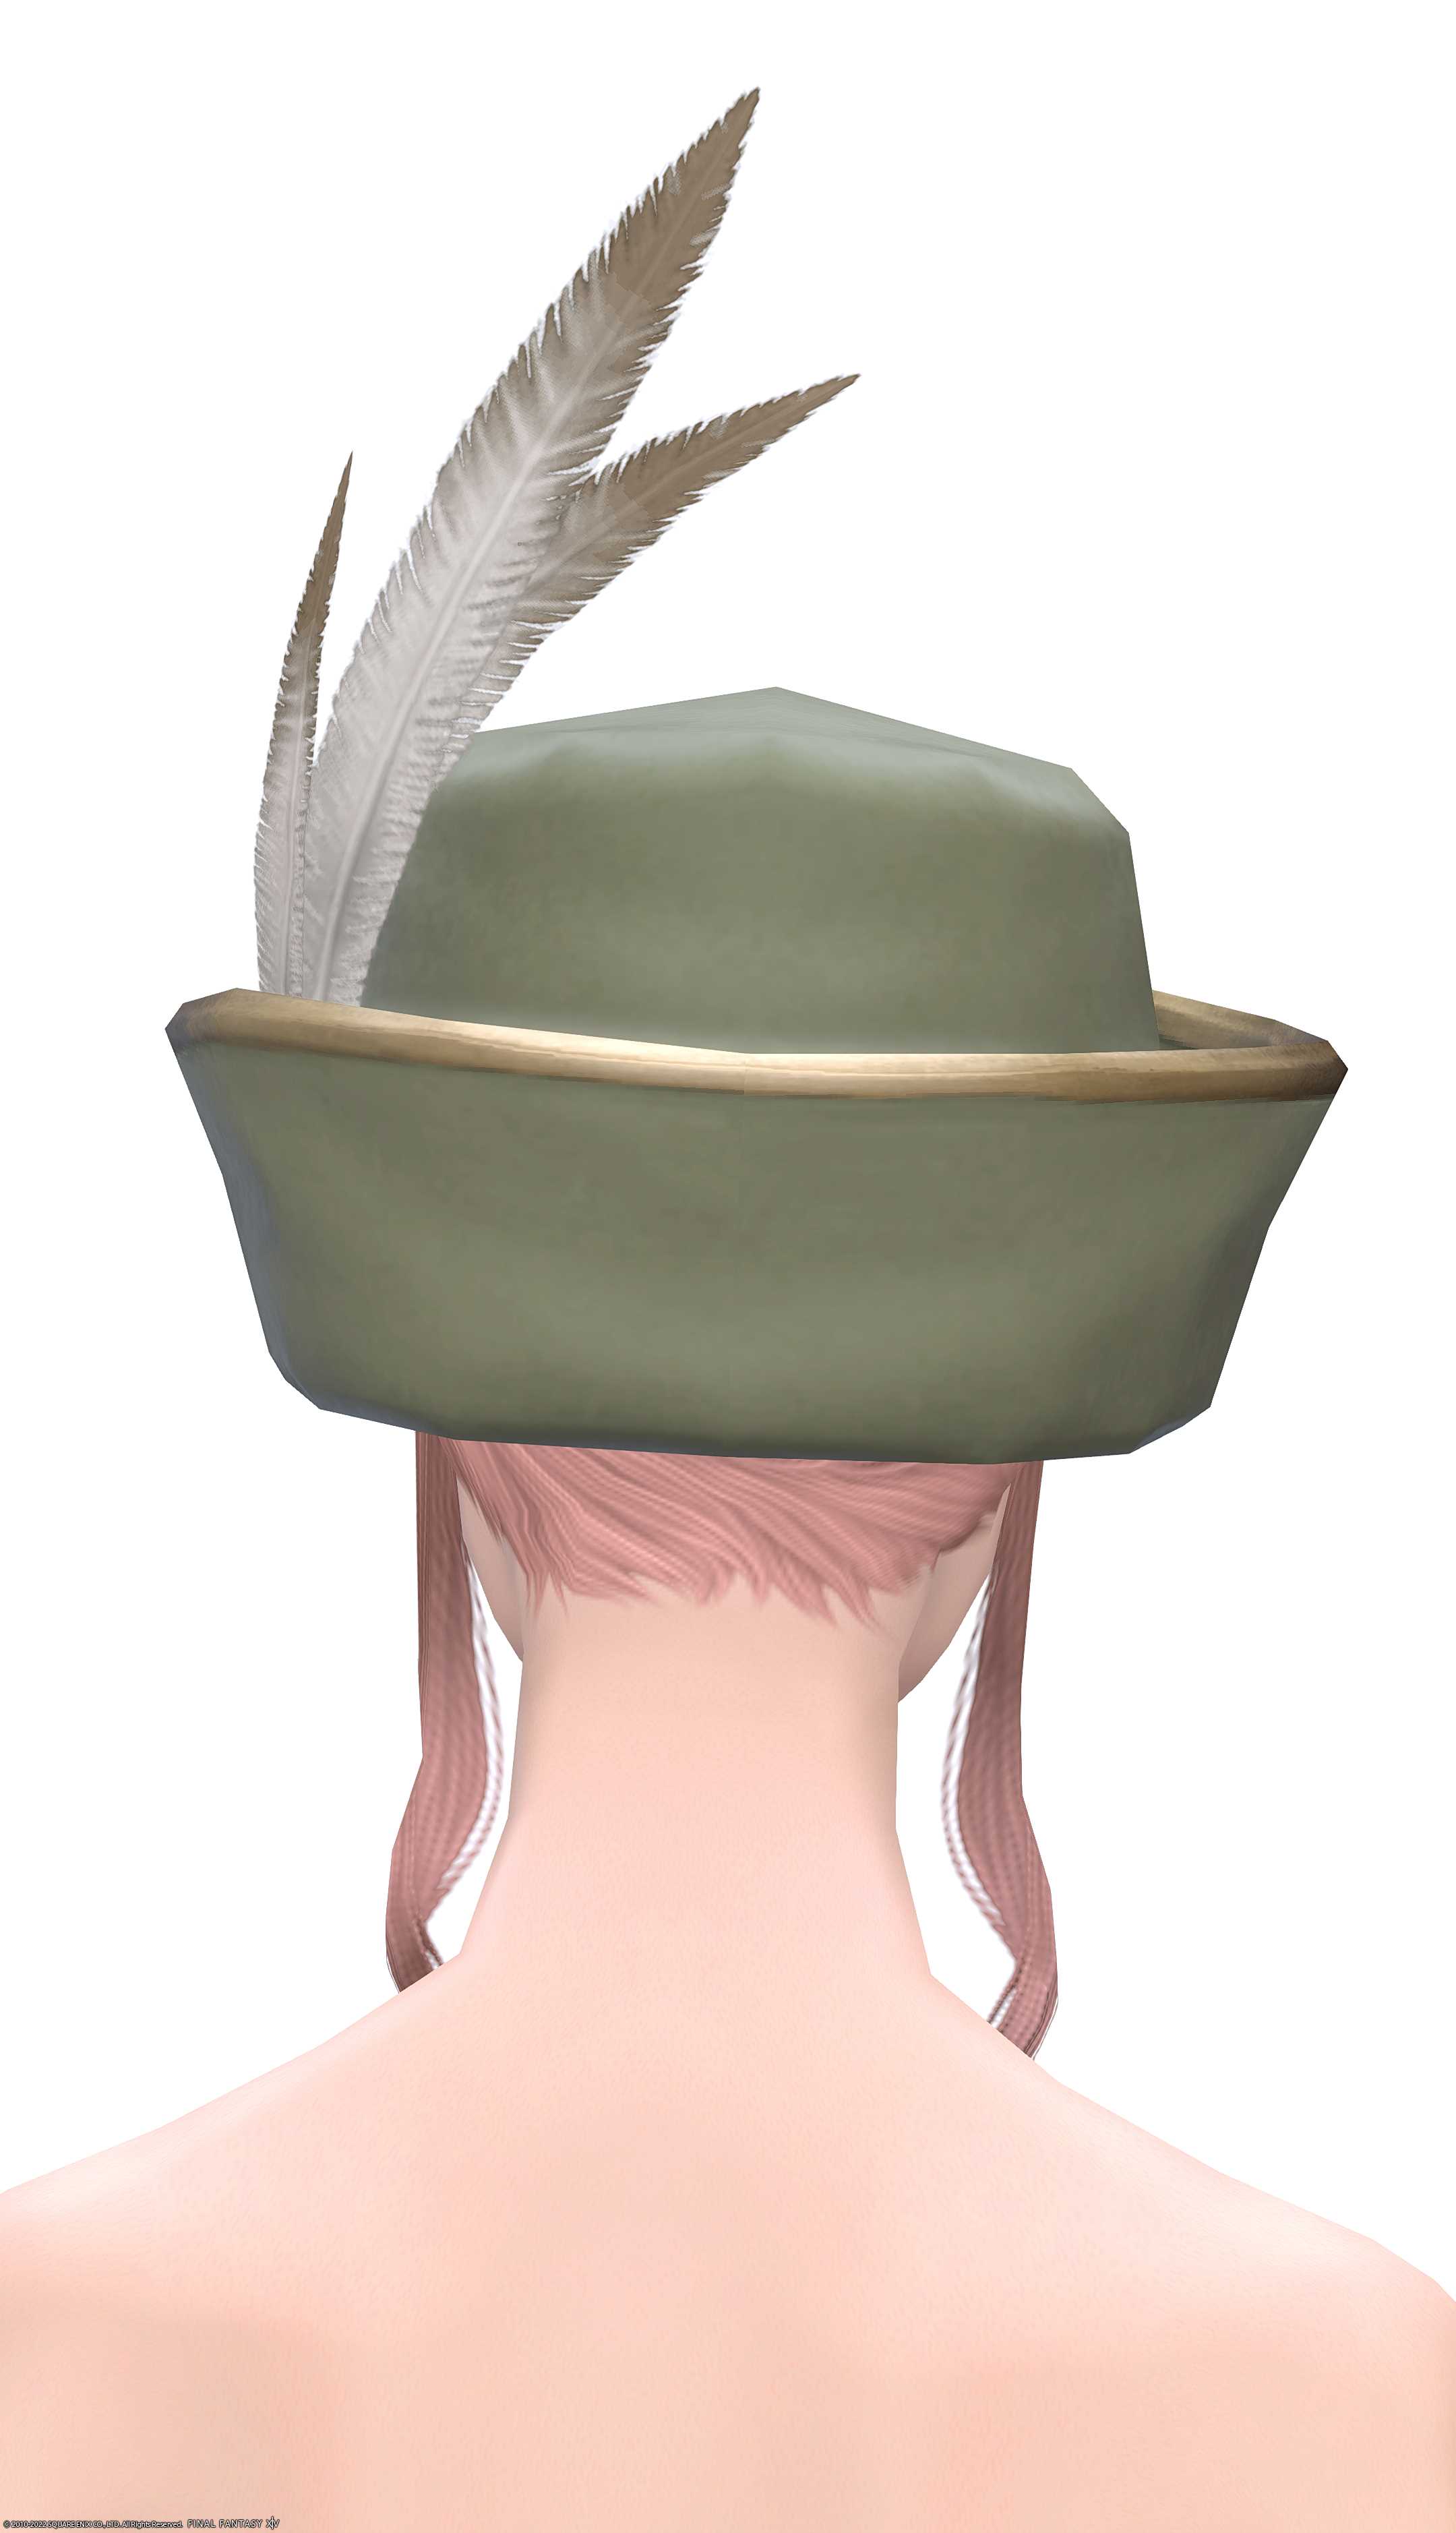 ヴァレリアンヴァデット・ハット | FF14ミラプリ - Valerian Vedette's Hat - 帽子/ハット